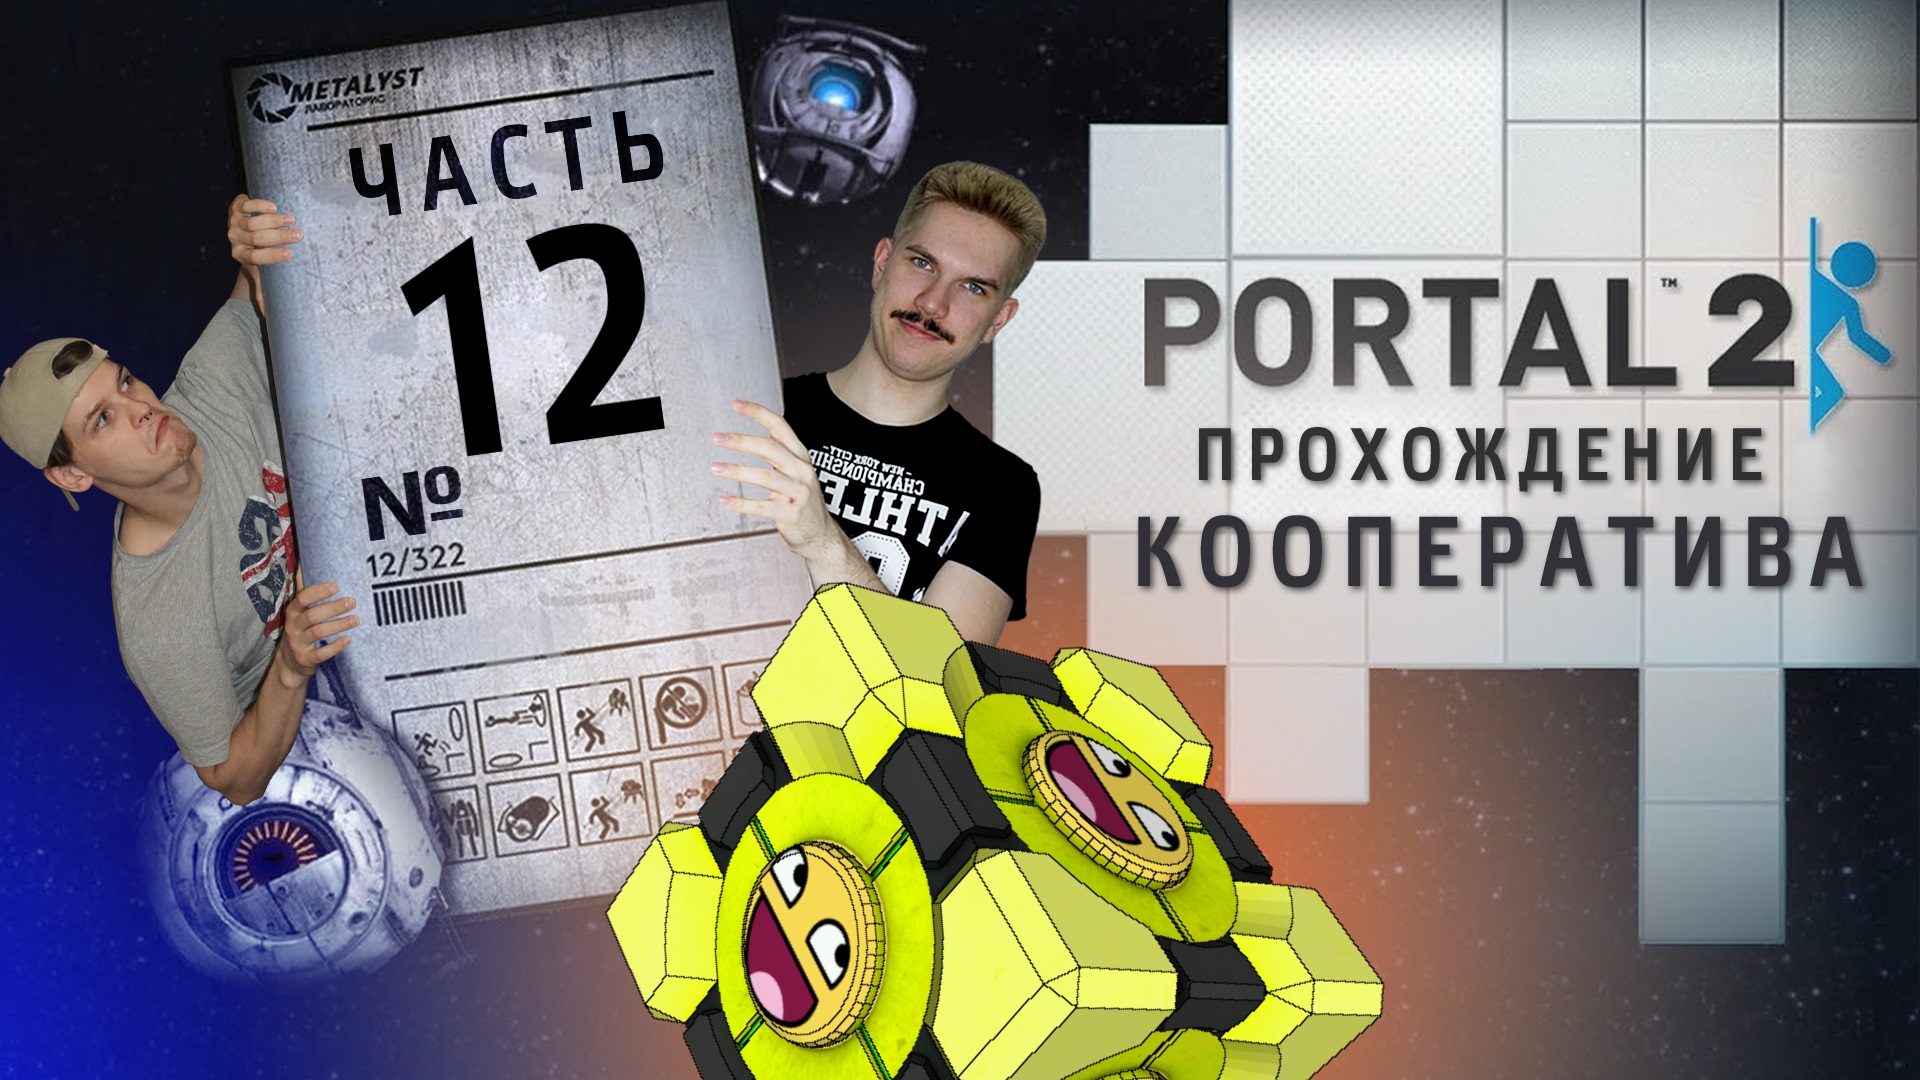 Portal 2 кооператив главы фото 22